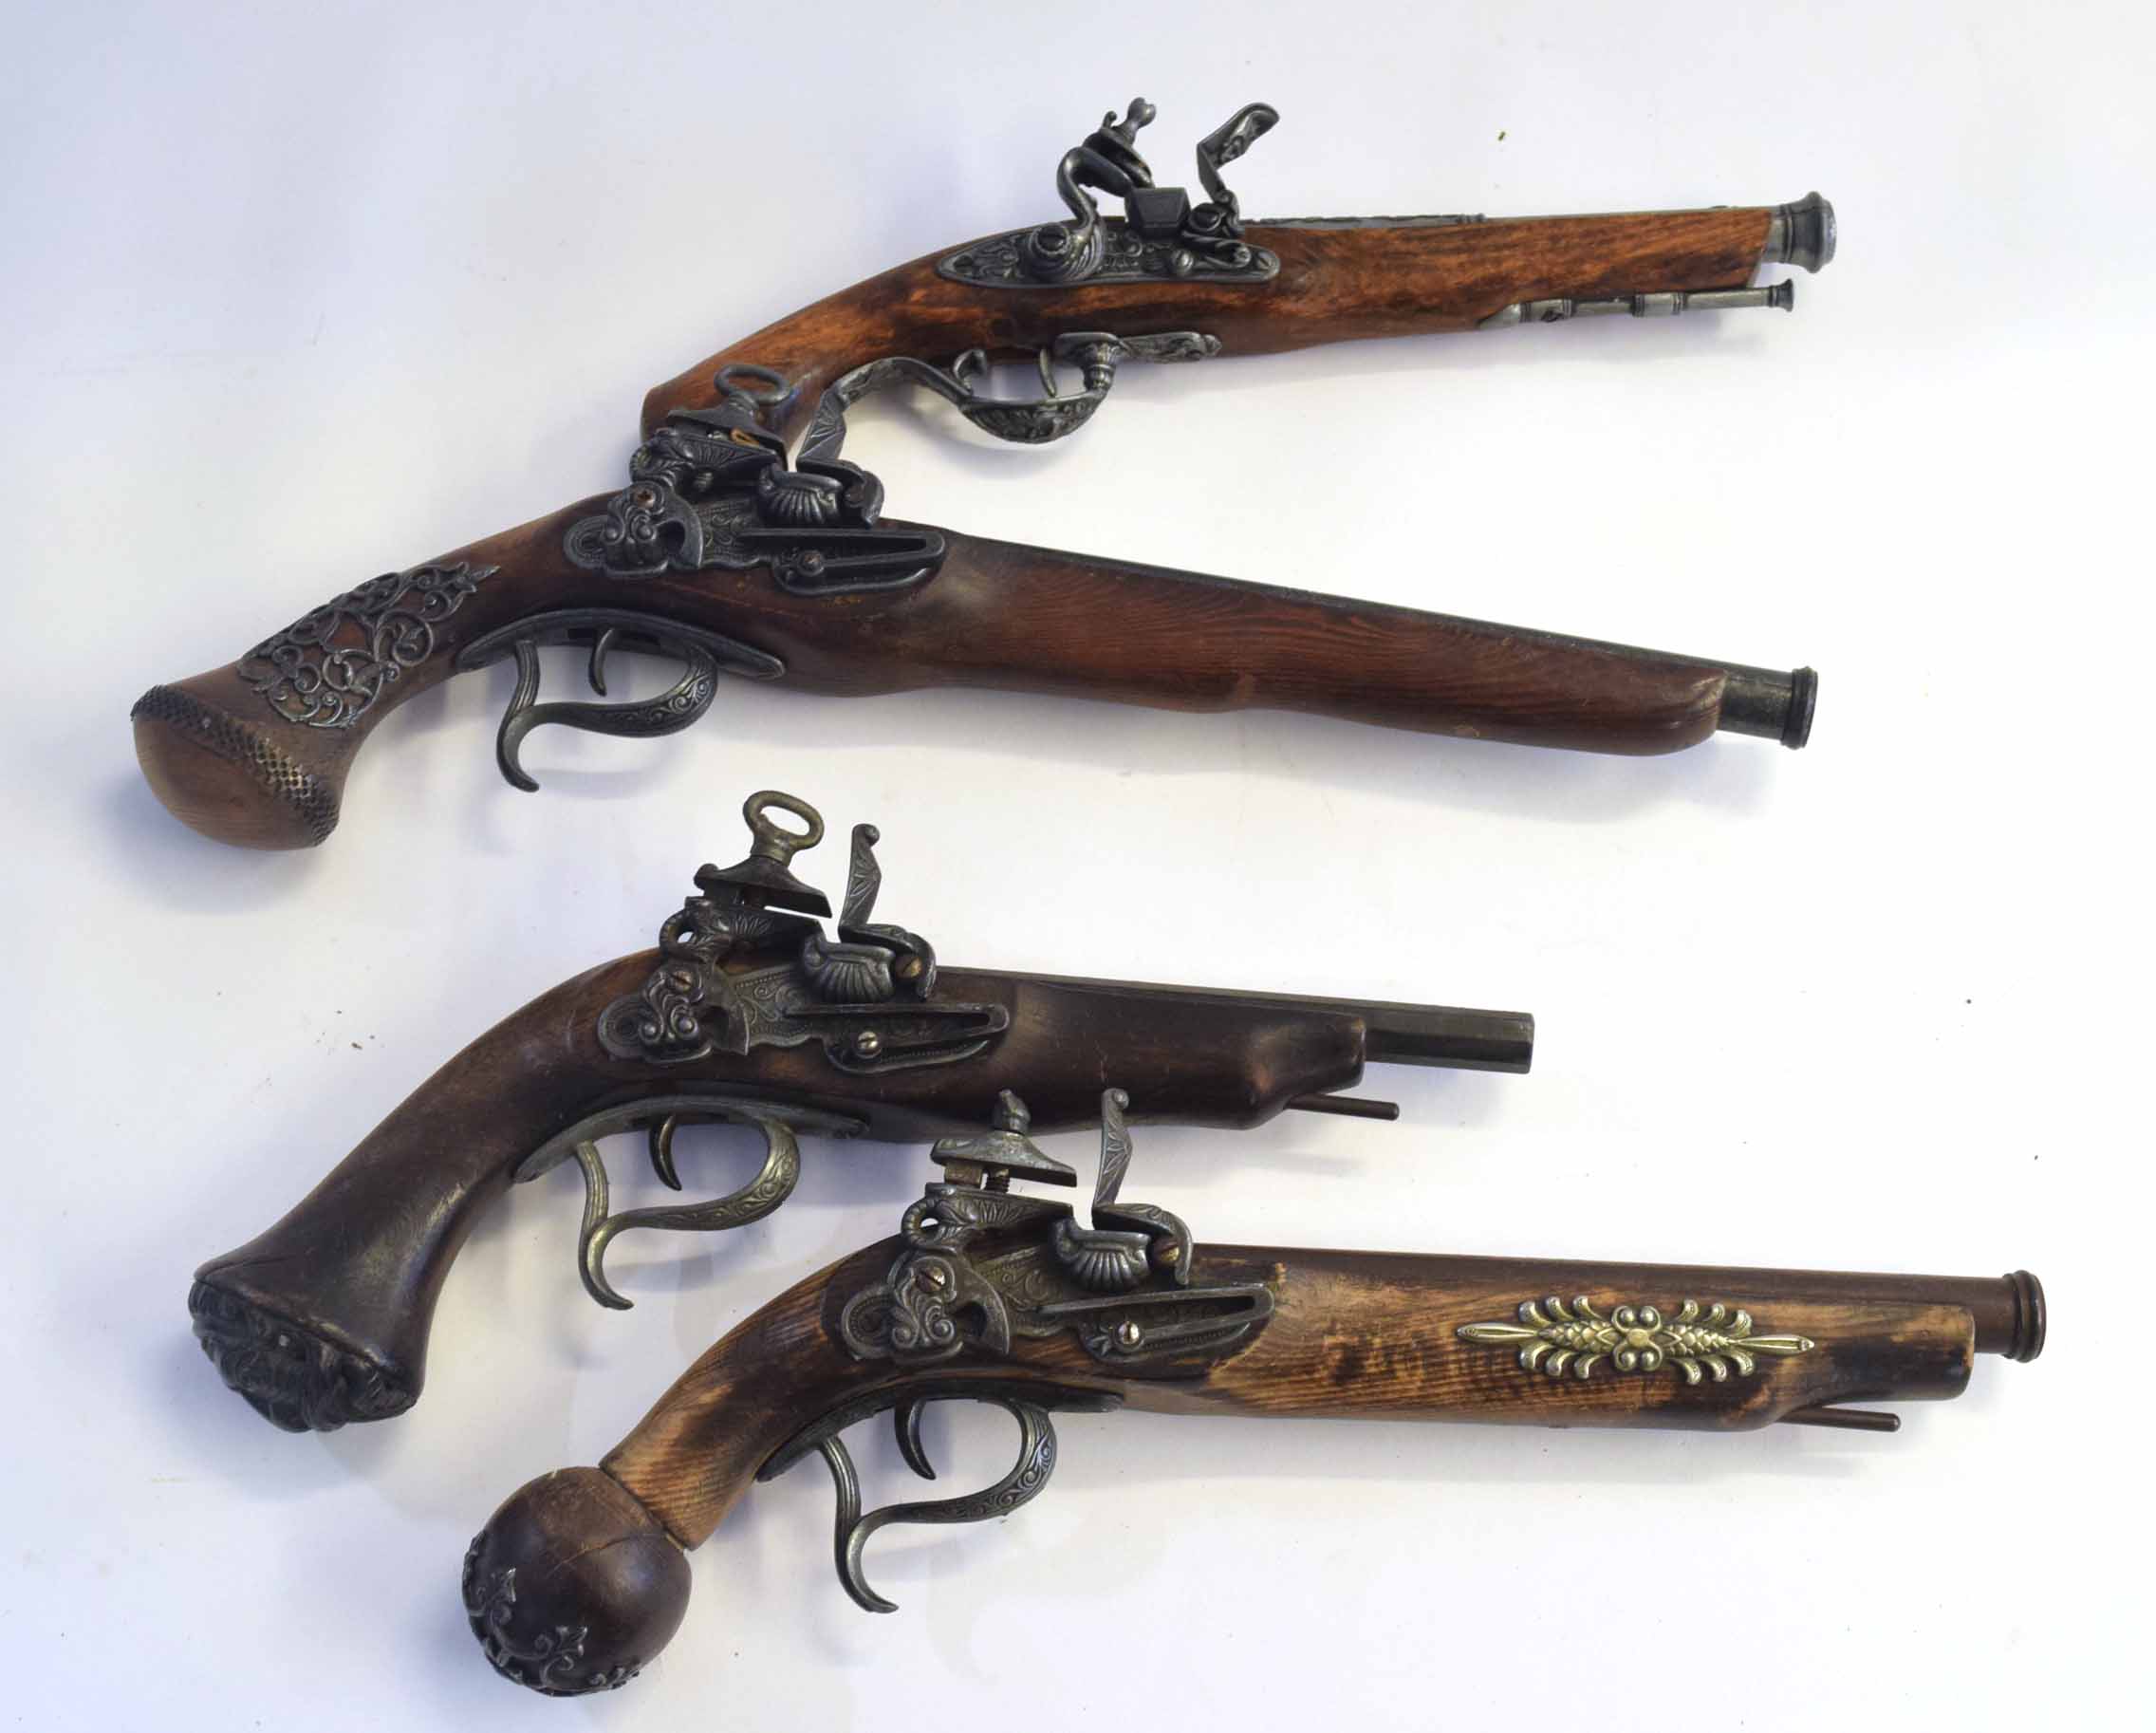 Four replica prop flintlock pistols